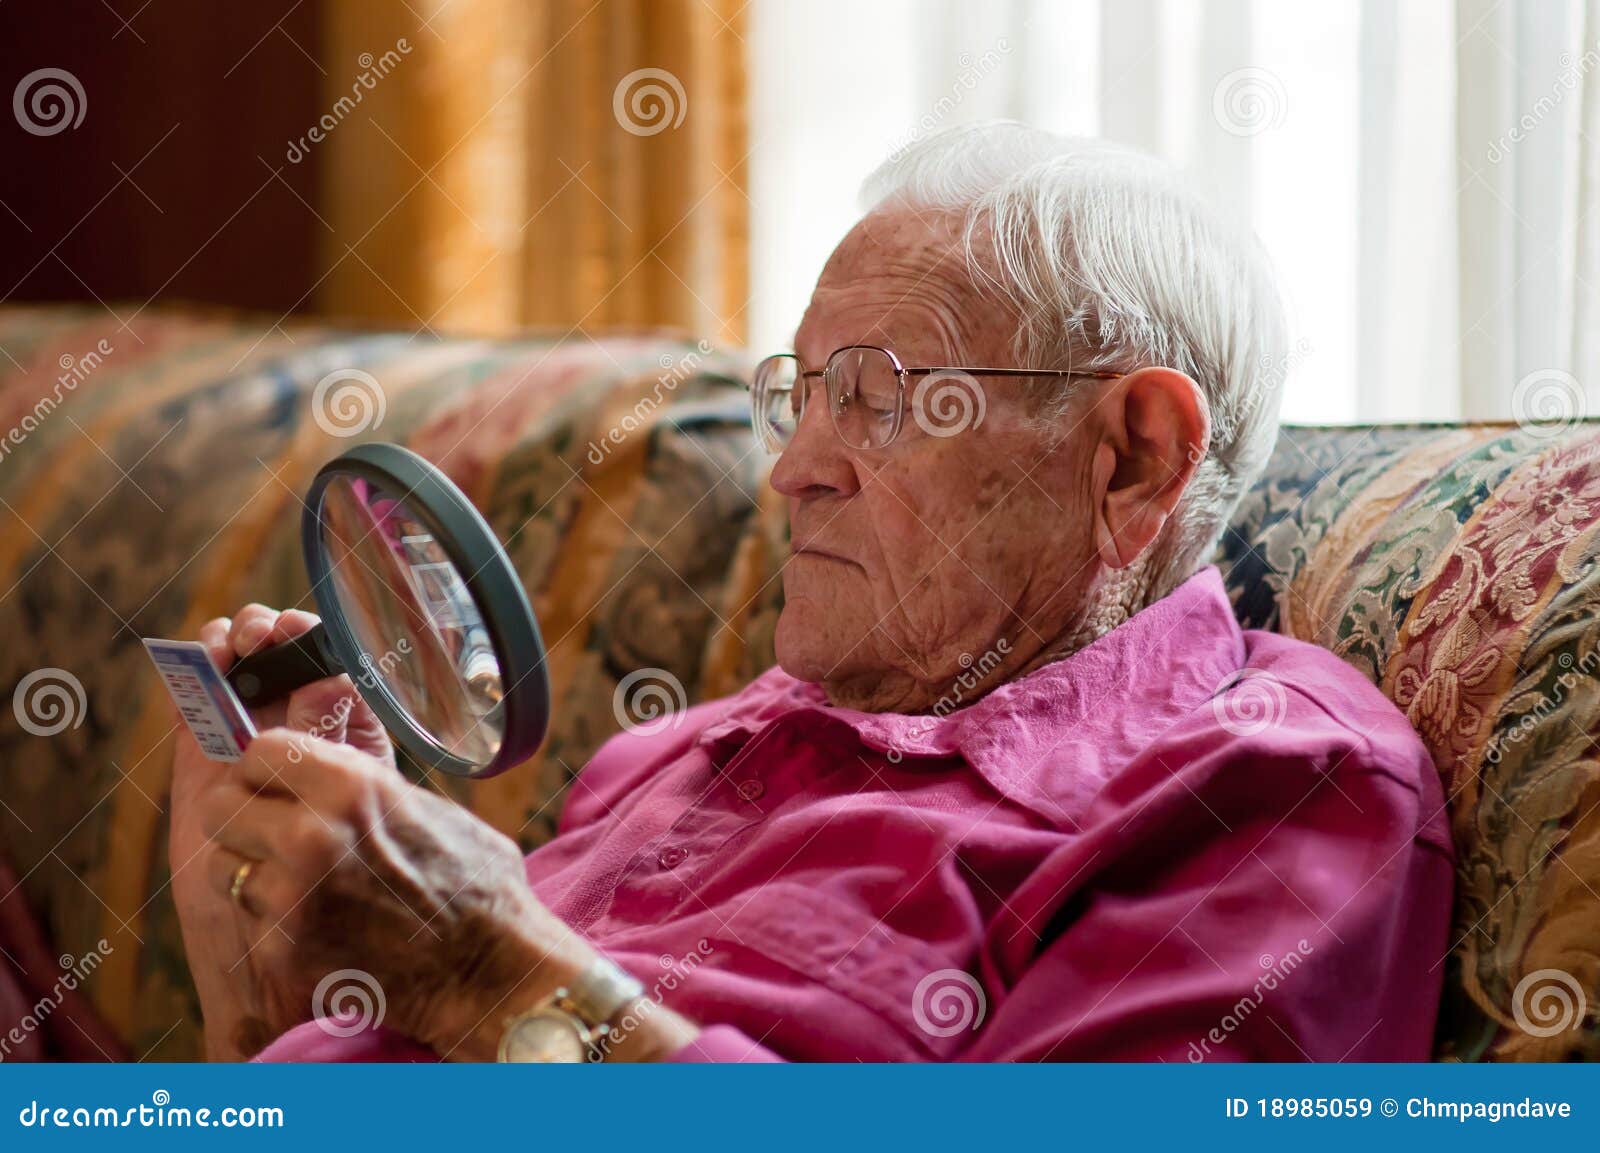 elderly man looking object magnifier 18985059